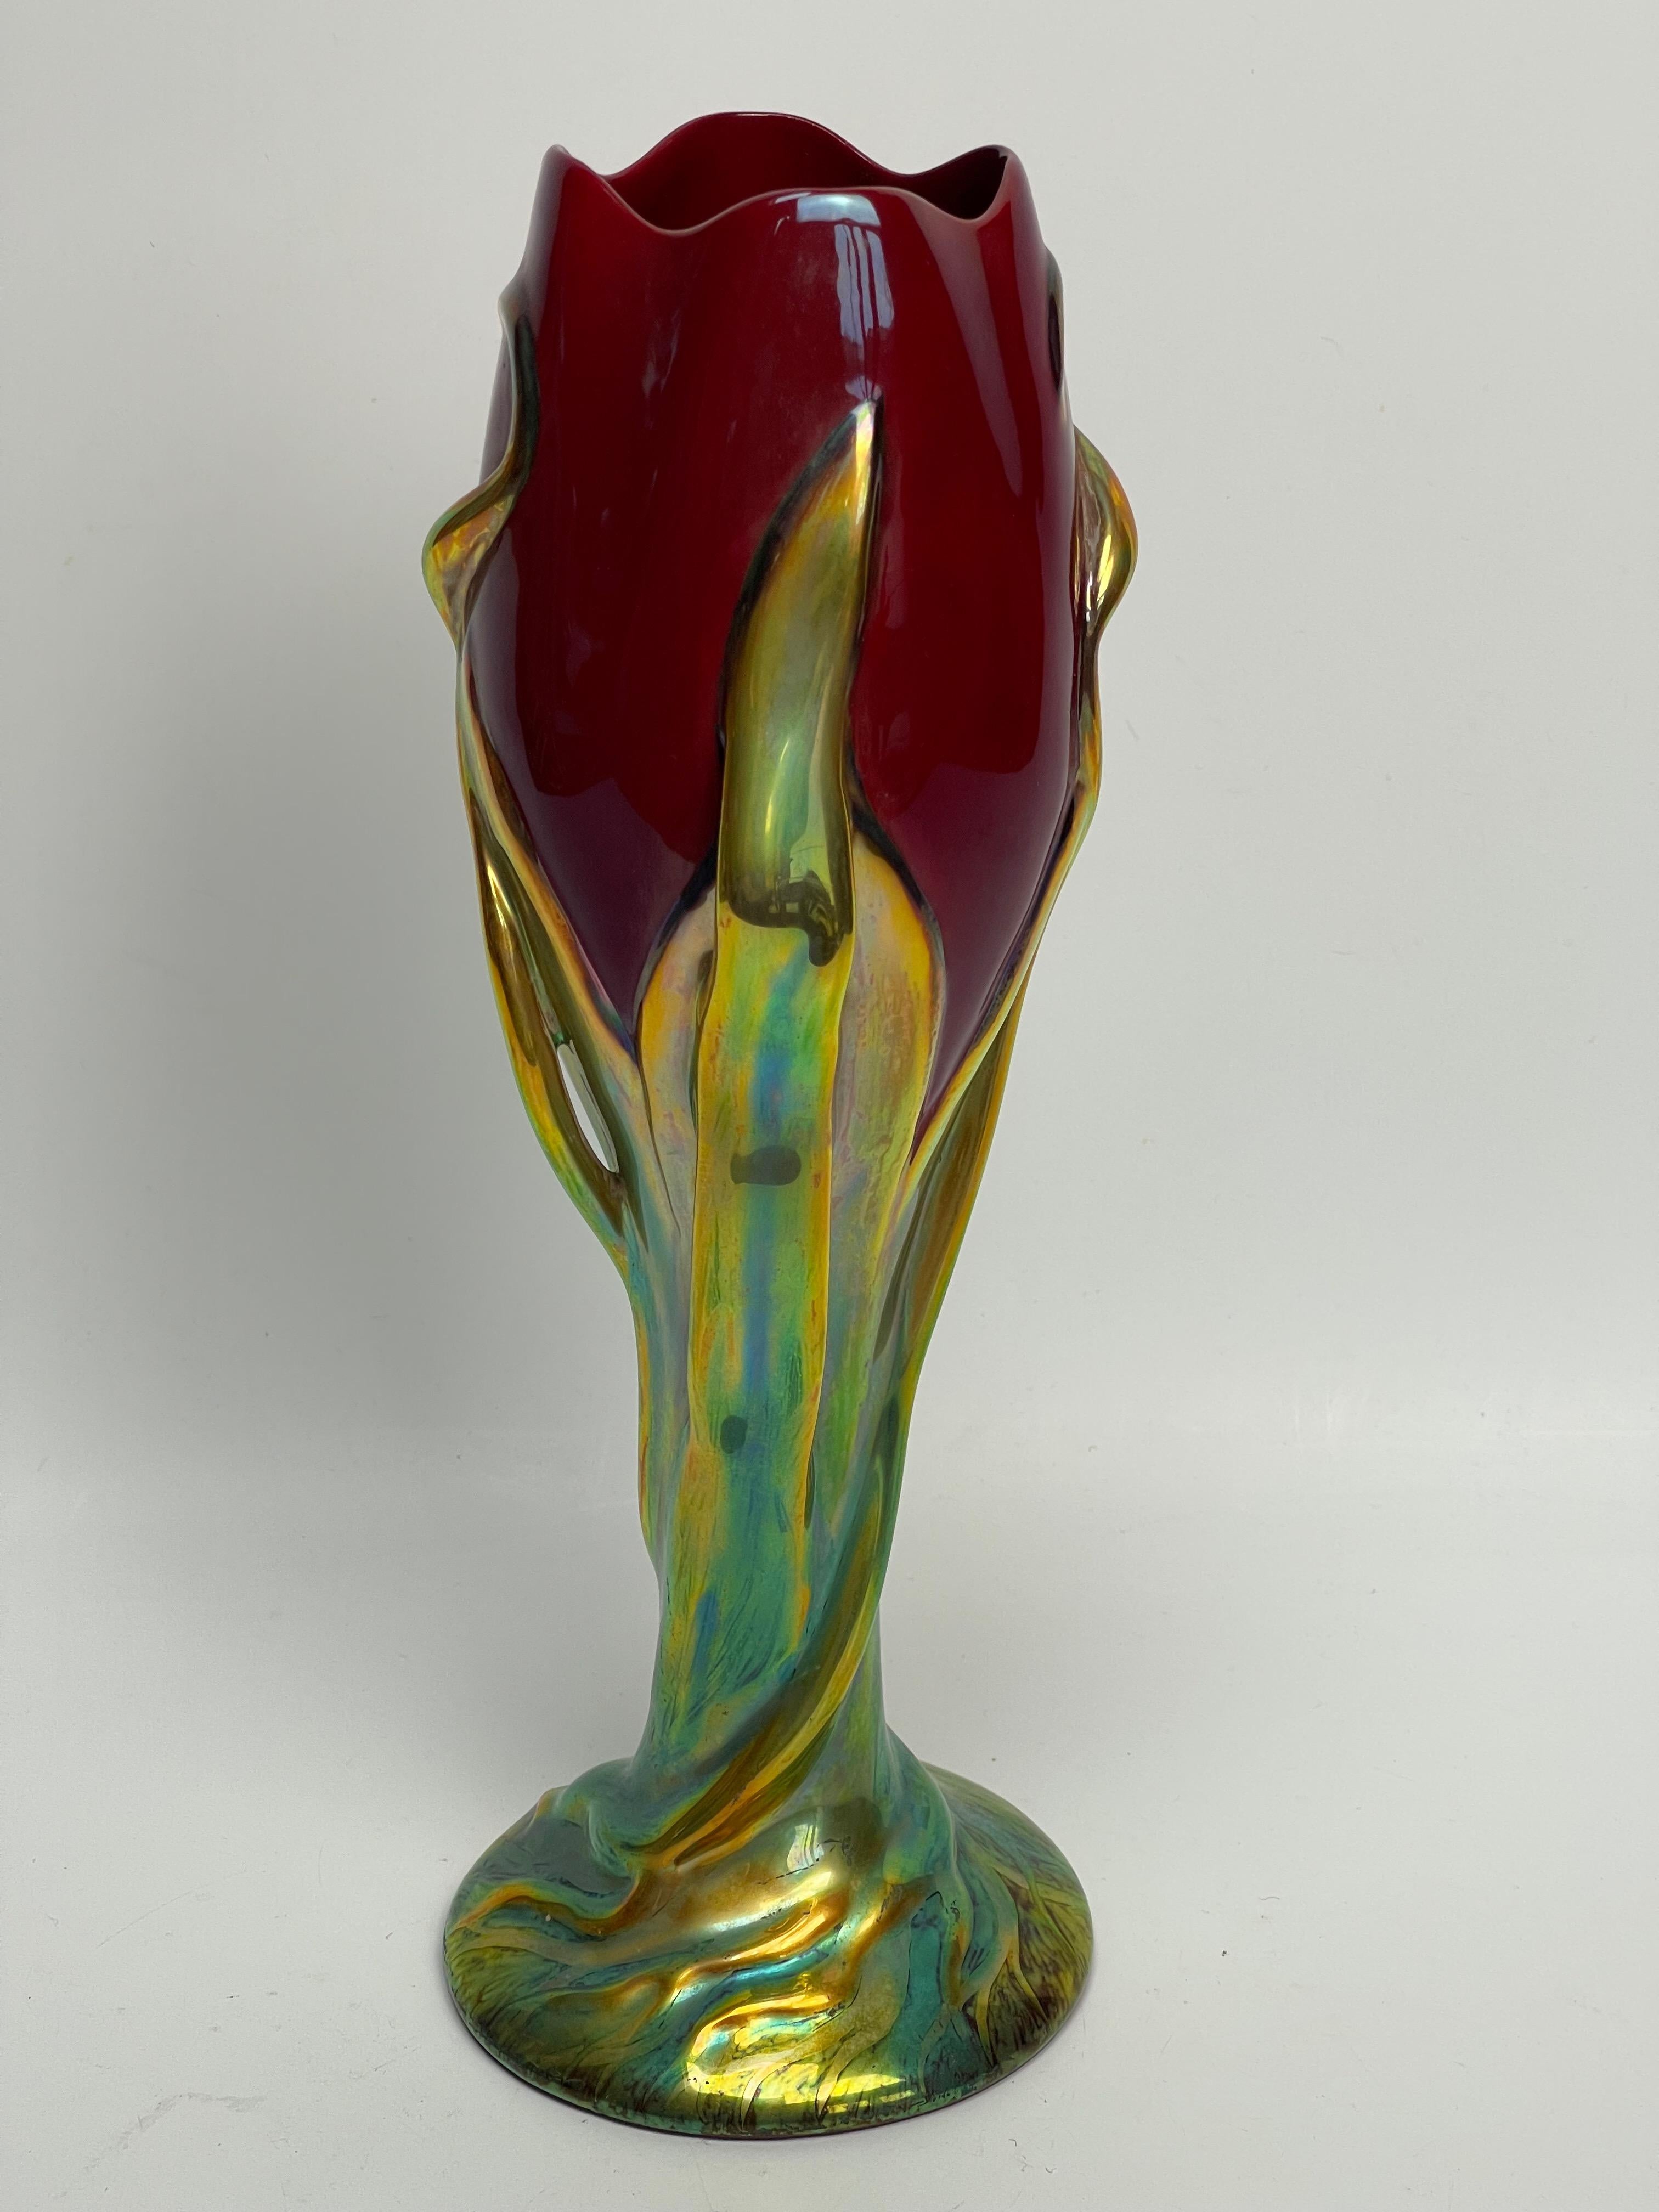 Zsolnay Fabrik Tulpenvase. 80er Jahre Neuauflage von Miss Eszter Jorok.
Nummer 5495.
Vase aus der Serie Tulip von 1899.
Vase in einwandfreiem Zustand, beachten Sie eine kleine Kochen Fehler innerhalb eines der Blätter in der Anwendung. Siehe auf